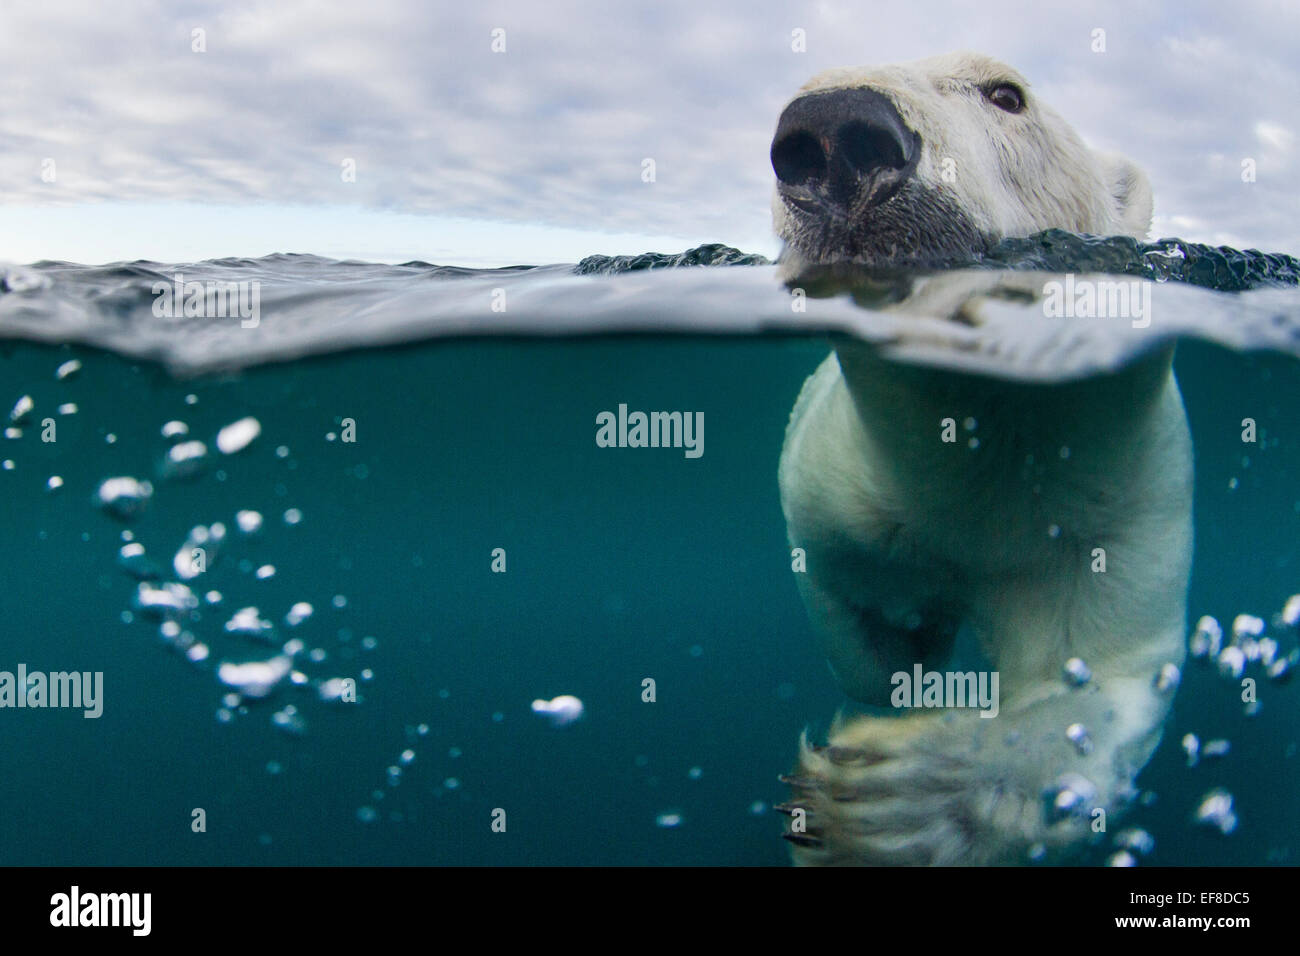 Canada, Nunavut Territorio, Repulse Bay,vista subacquea di Orso Polare (Ursus maritimus) nuotare nella baia di Hudson nei pressi del porto Islan Foto Stock